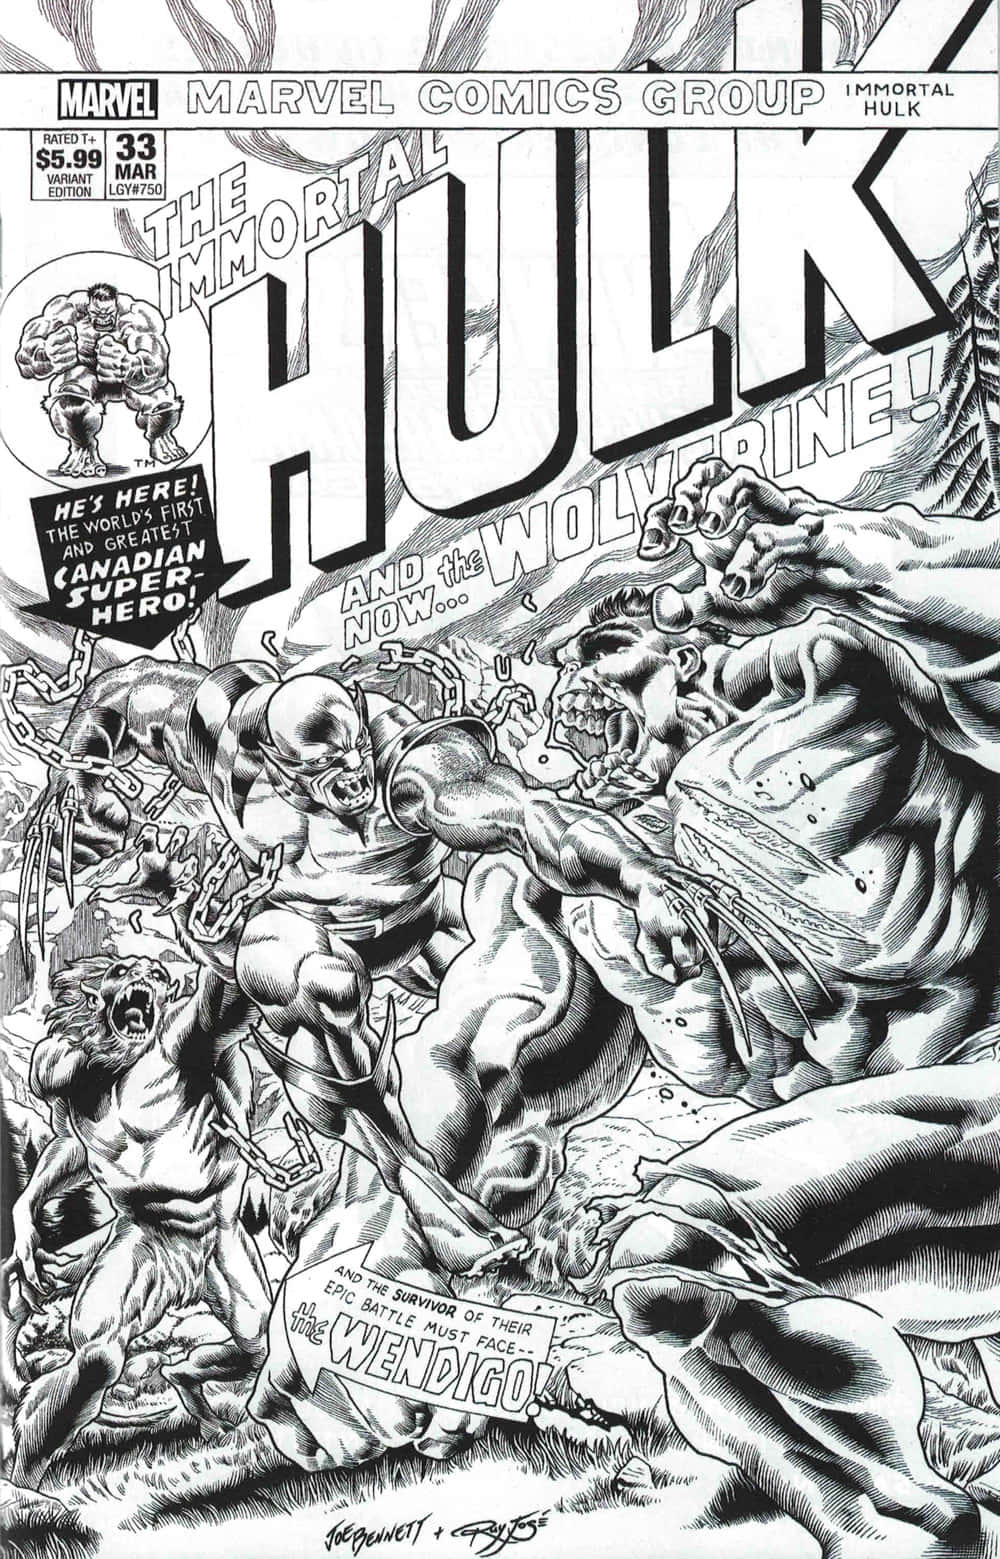 Coverset af tegneserien Hulk Wallpaper